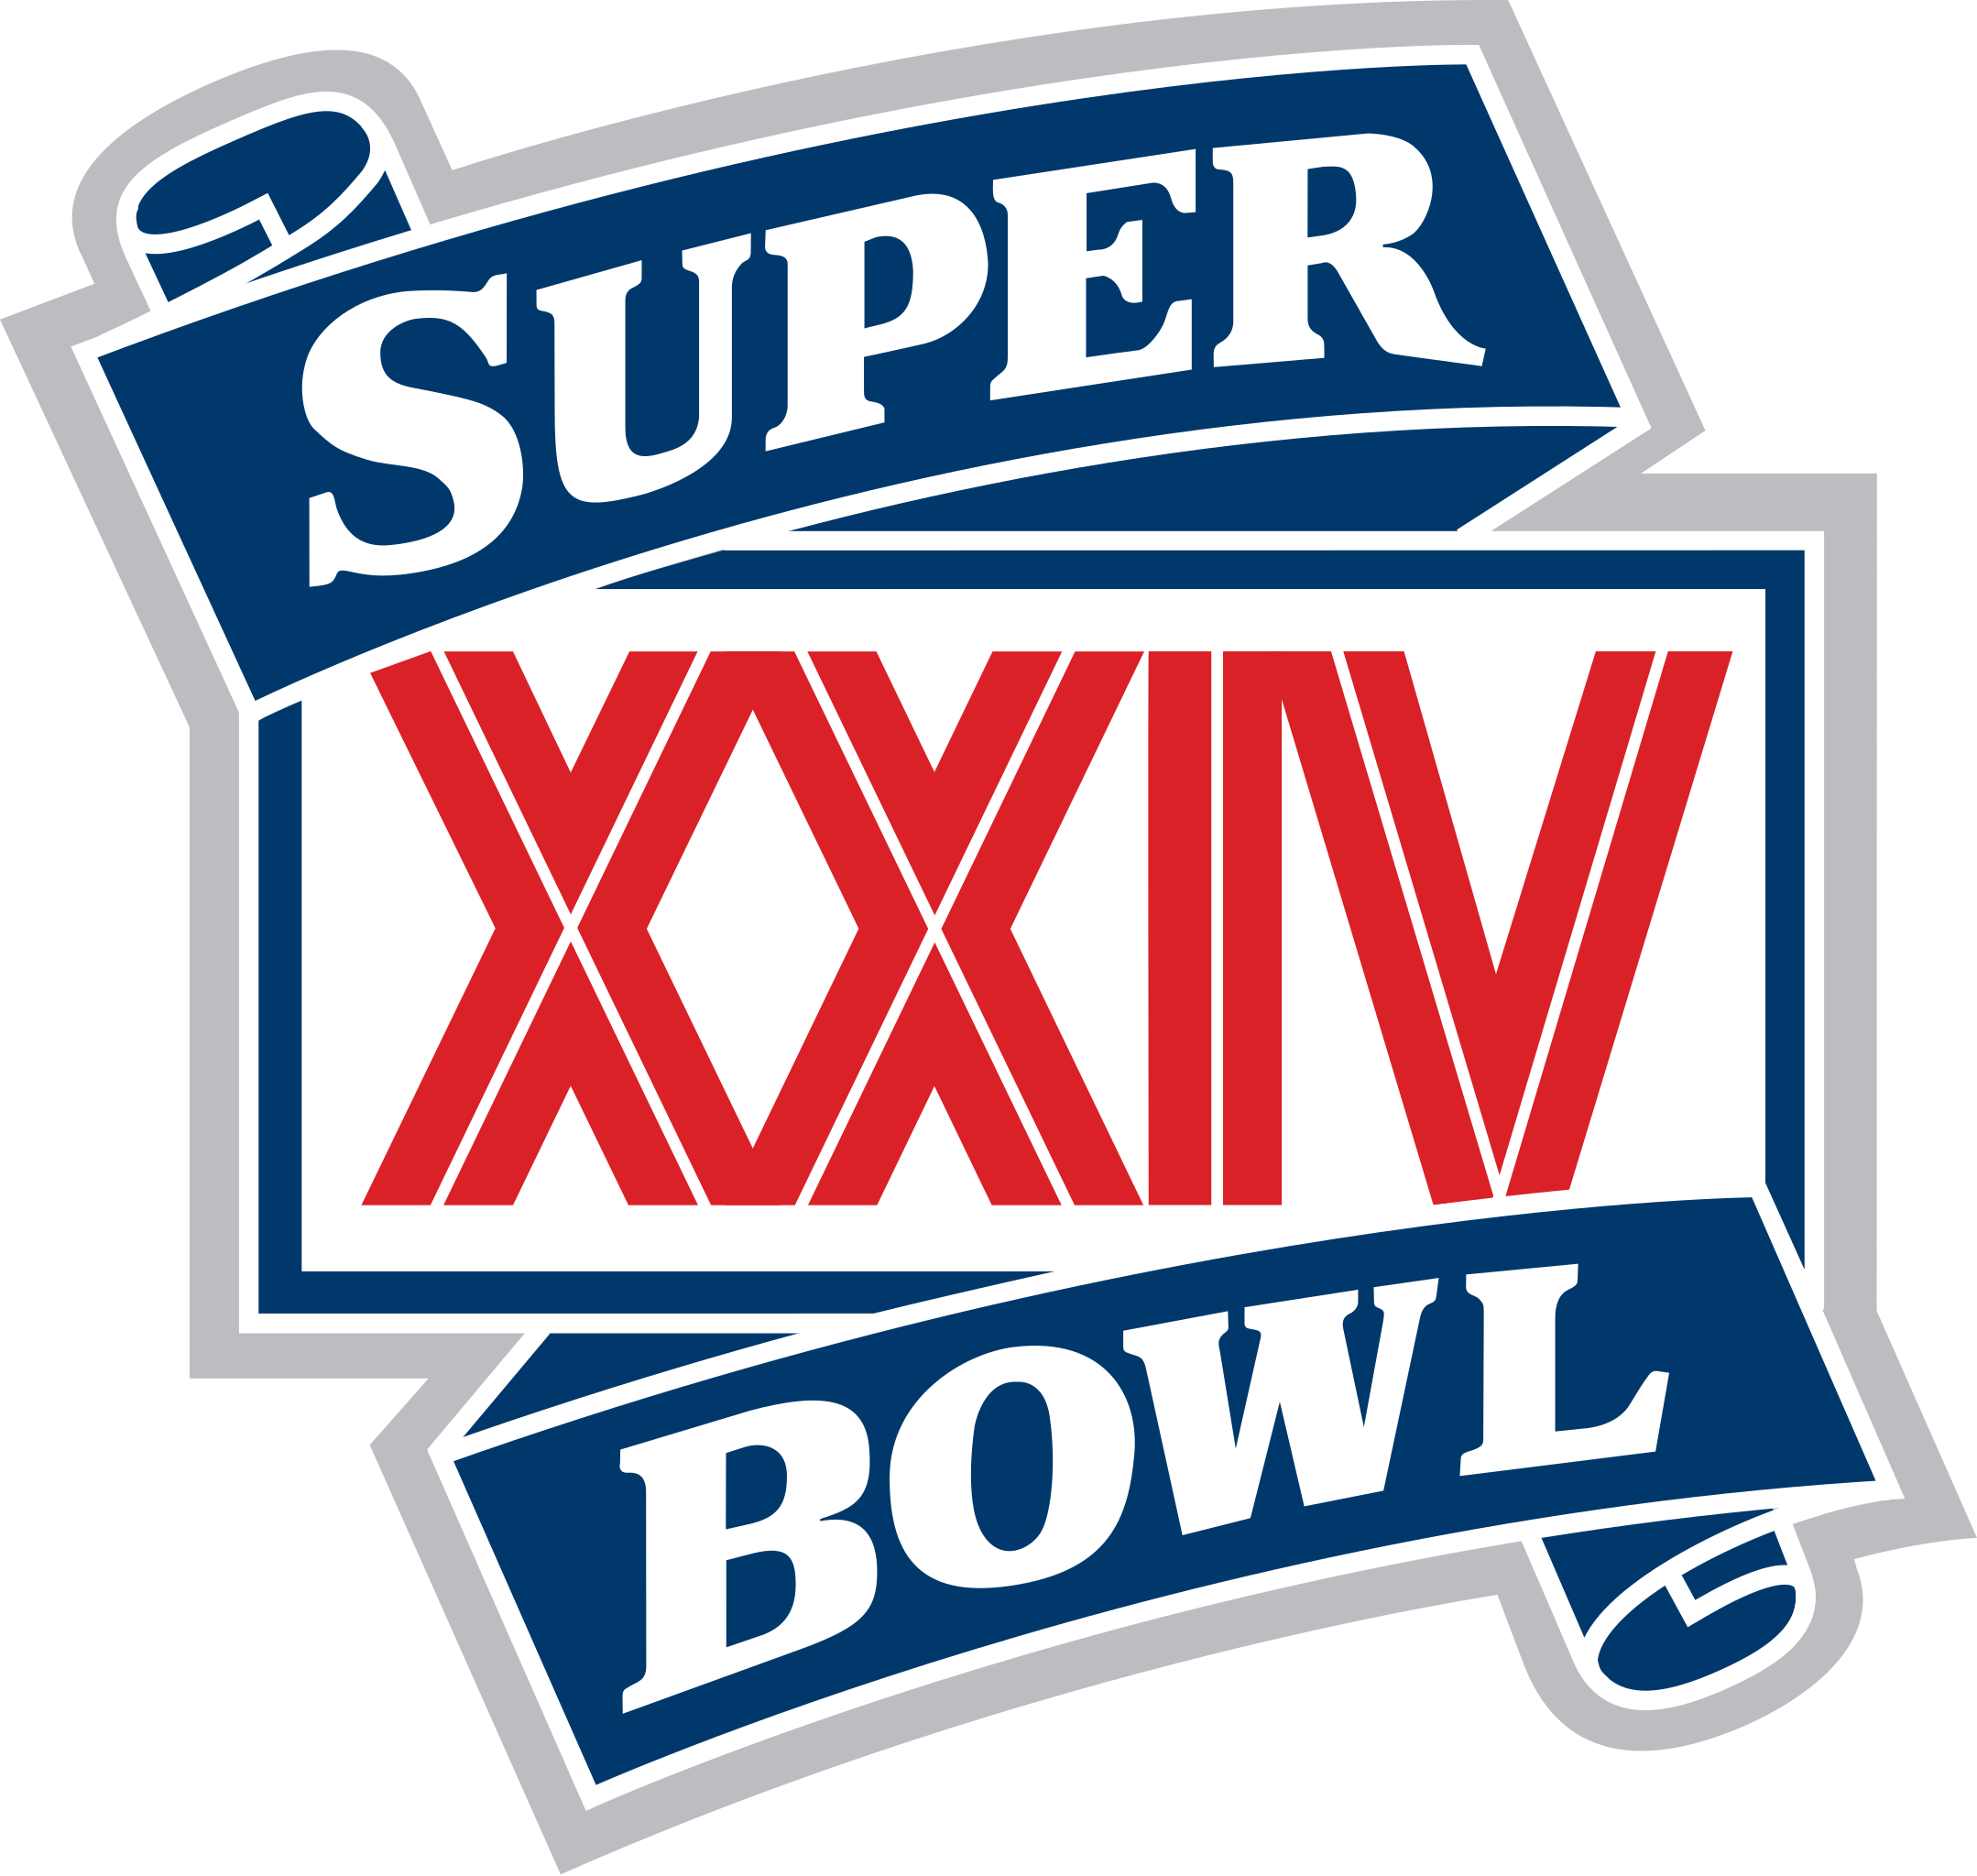 Super Bowl XXXV - Wikipedia